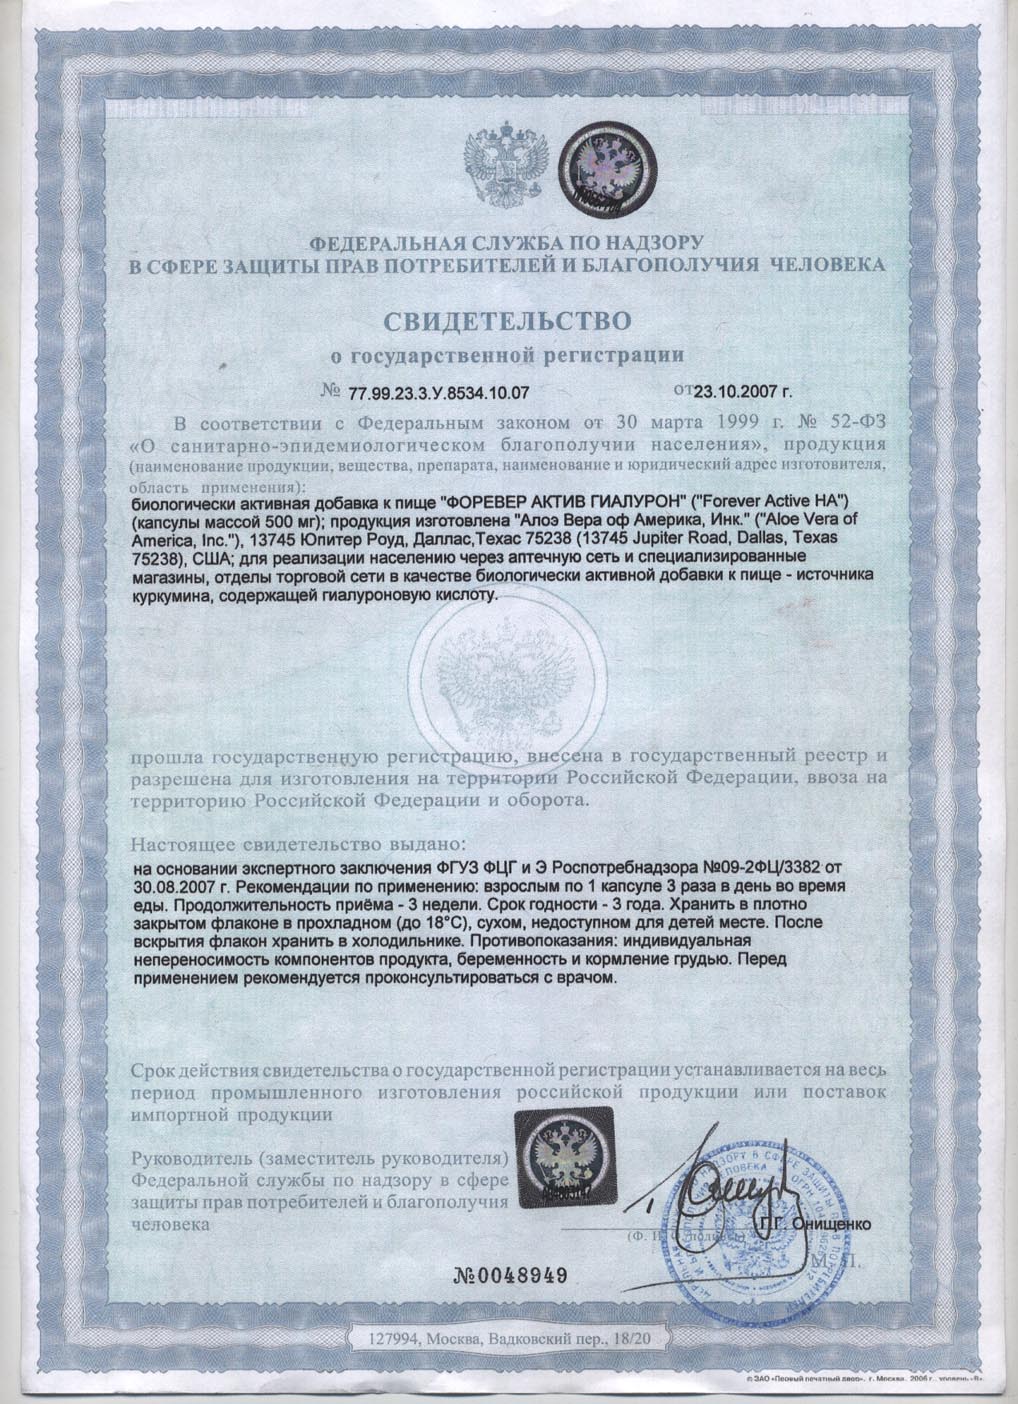 Сертификат Форевер Актив Гиалурон